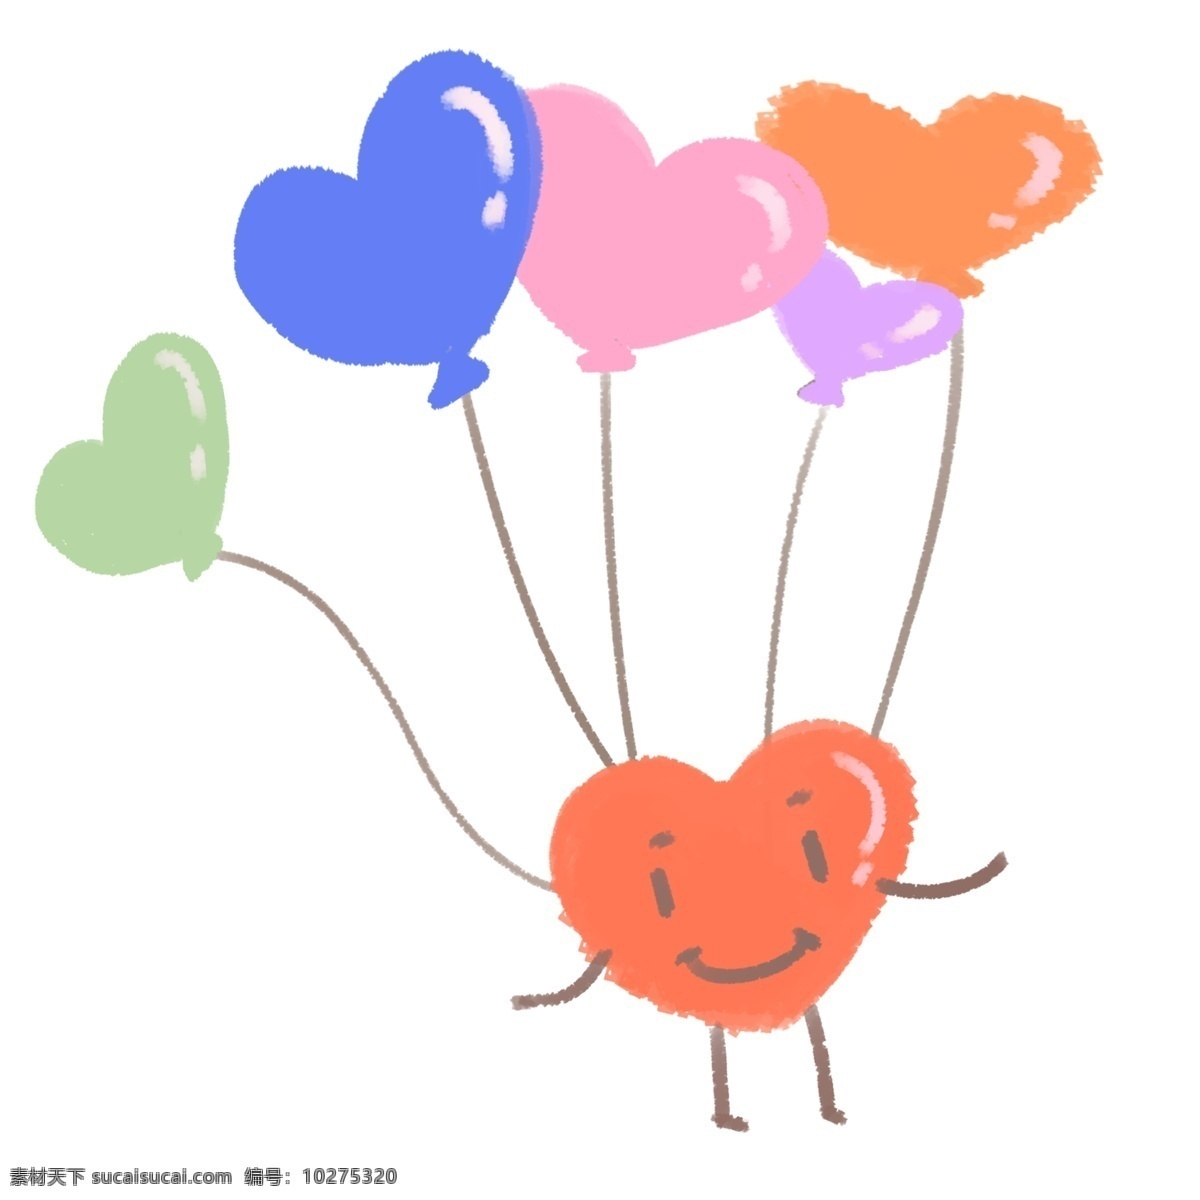 气球 彩色 爱心 图案 节日 祝福 商业 海报 庆祝 广告 招贴 装饰 手绘 心形 几何 手账 插图 插画